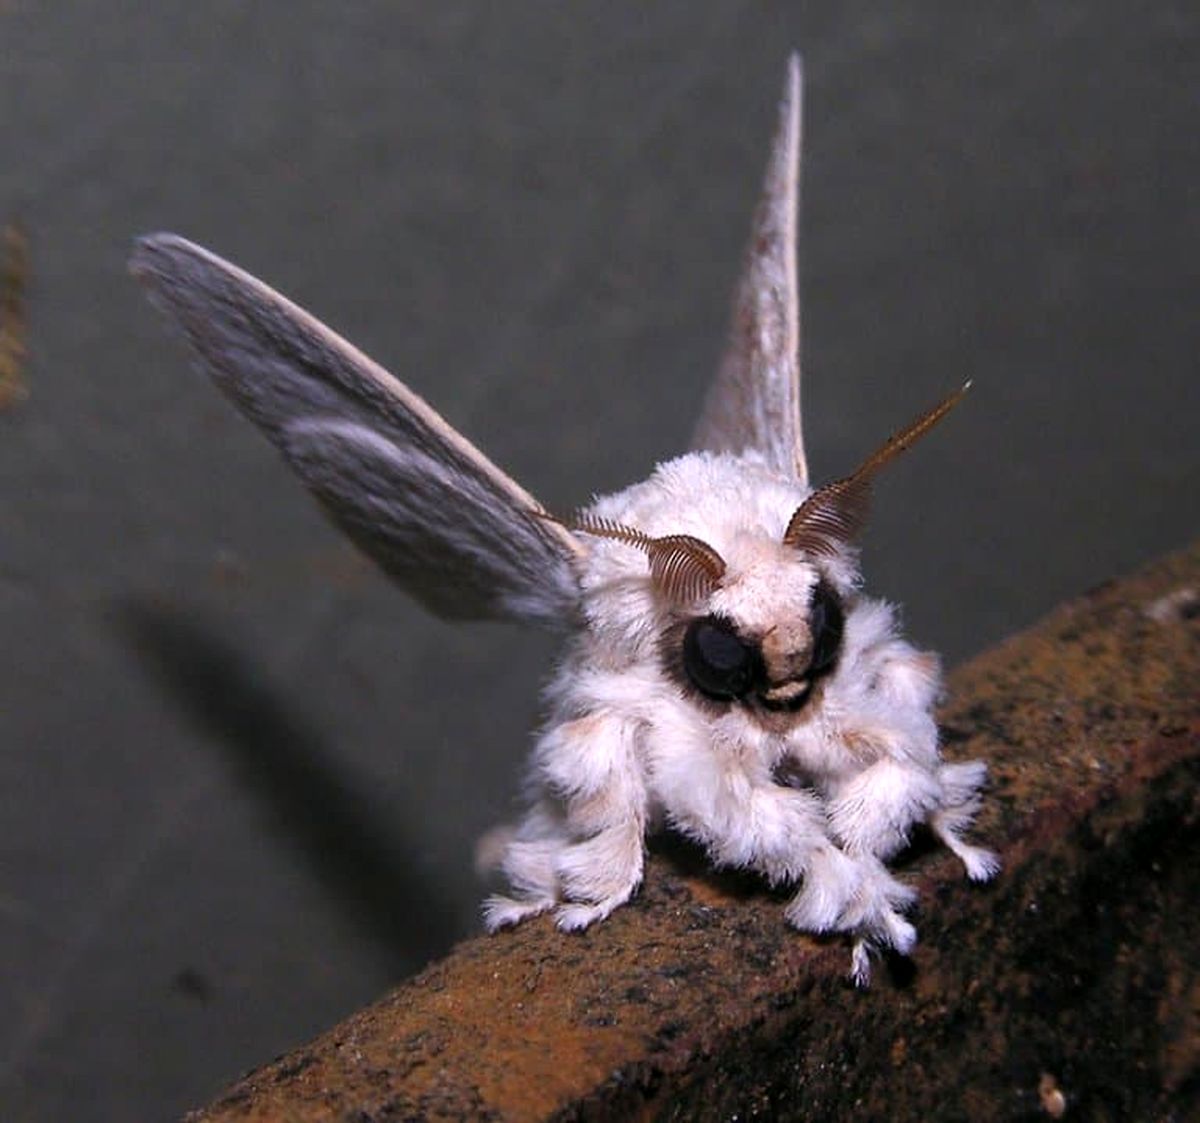 venezuelan-poodle-moth-facts